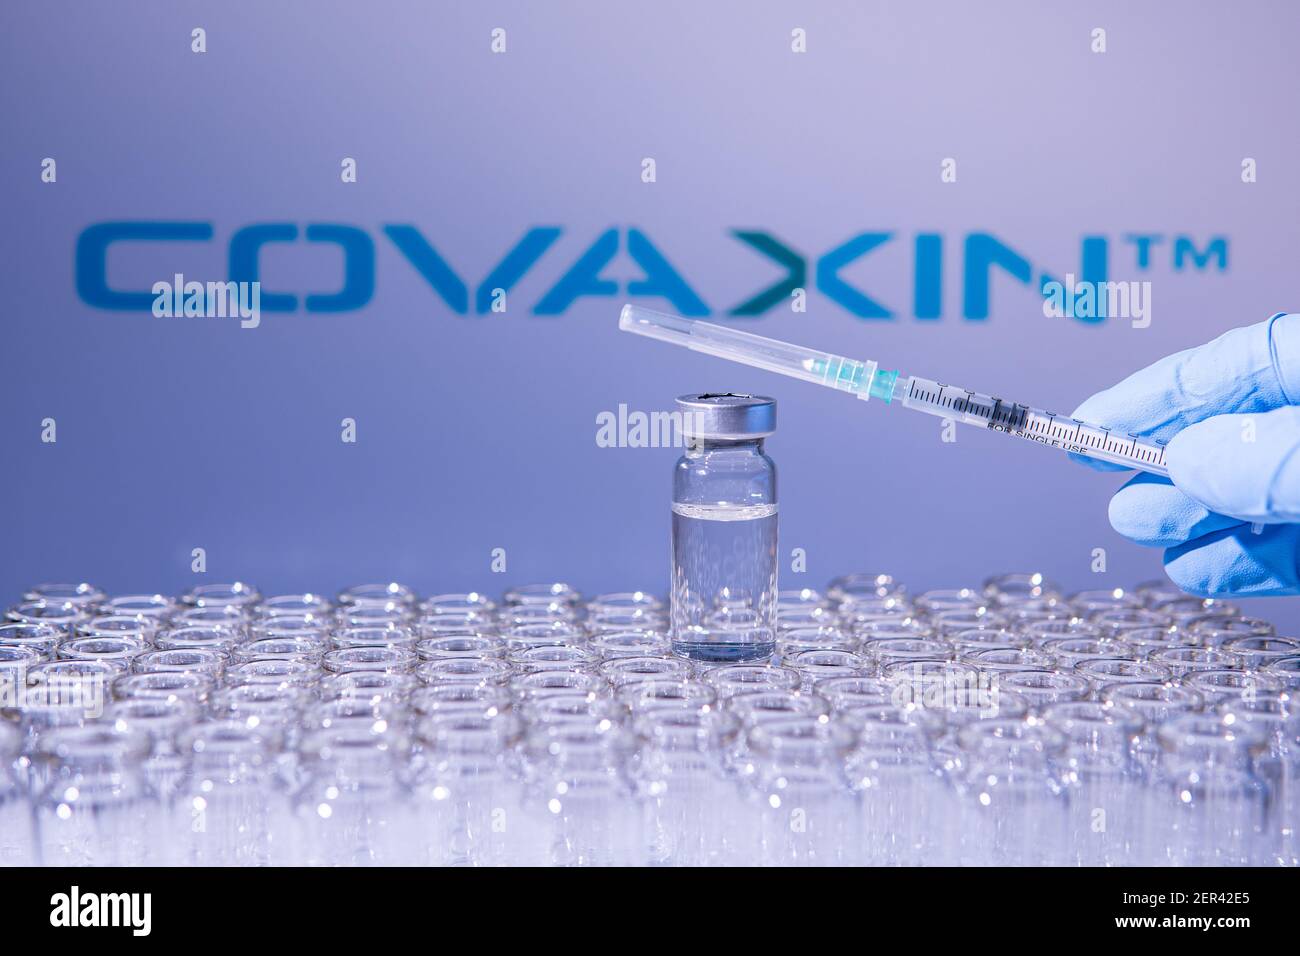 Toronto (Ontario), Canada - le 14 février 2021 : UN travailleur de la santé se prépare à administrer une dose du vaccin indien Covaxin. Le nom de la société est flou Banque D'Images